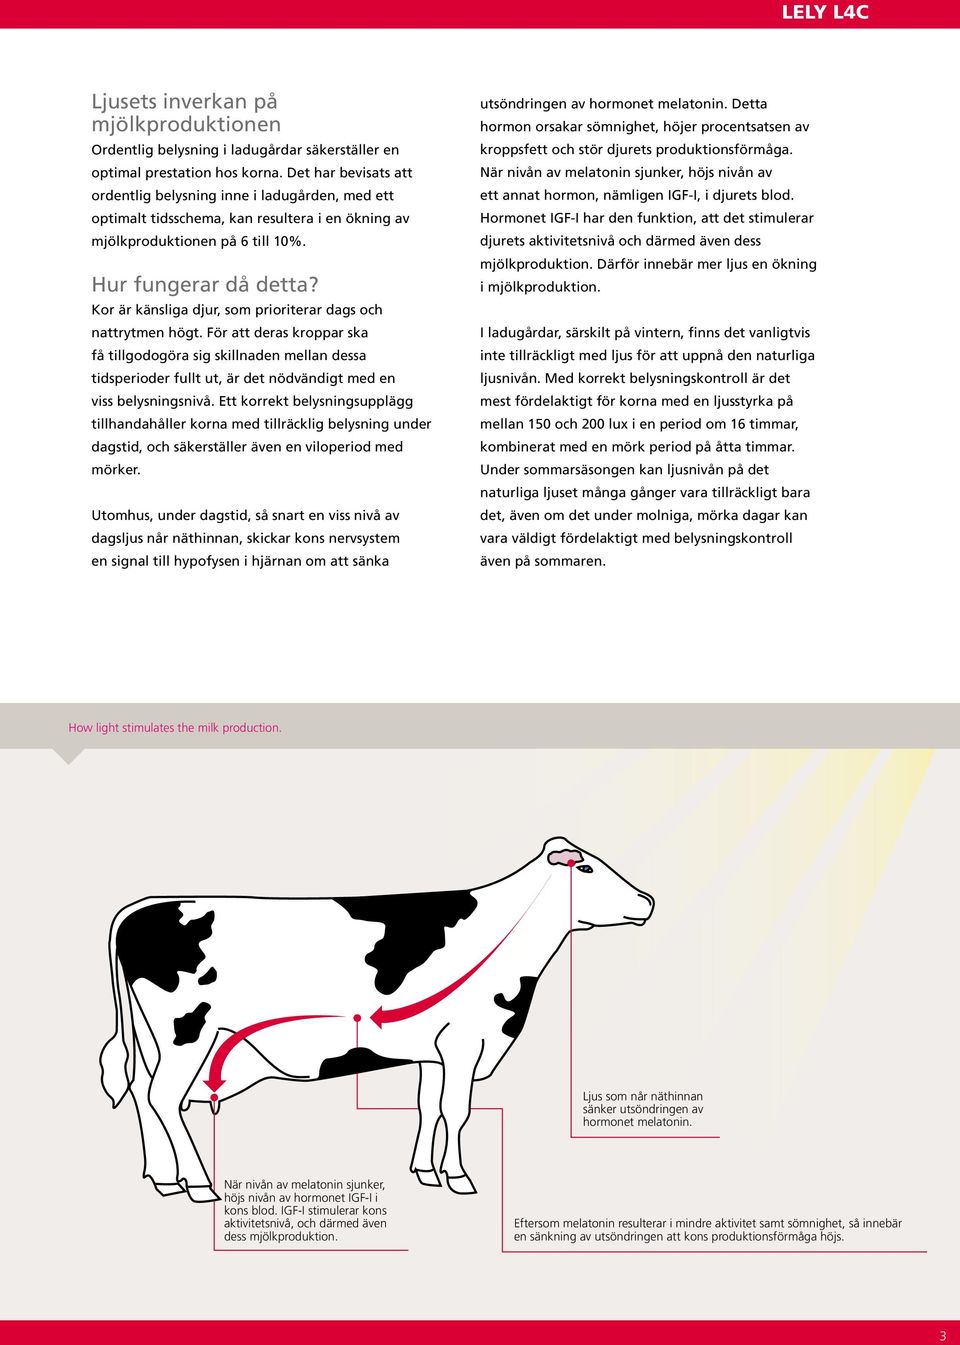 Kor är känsliga djur, som prioriterar dags och nattrytmen högt.